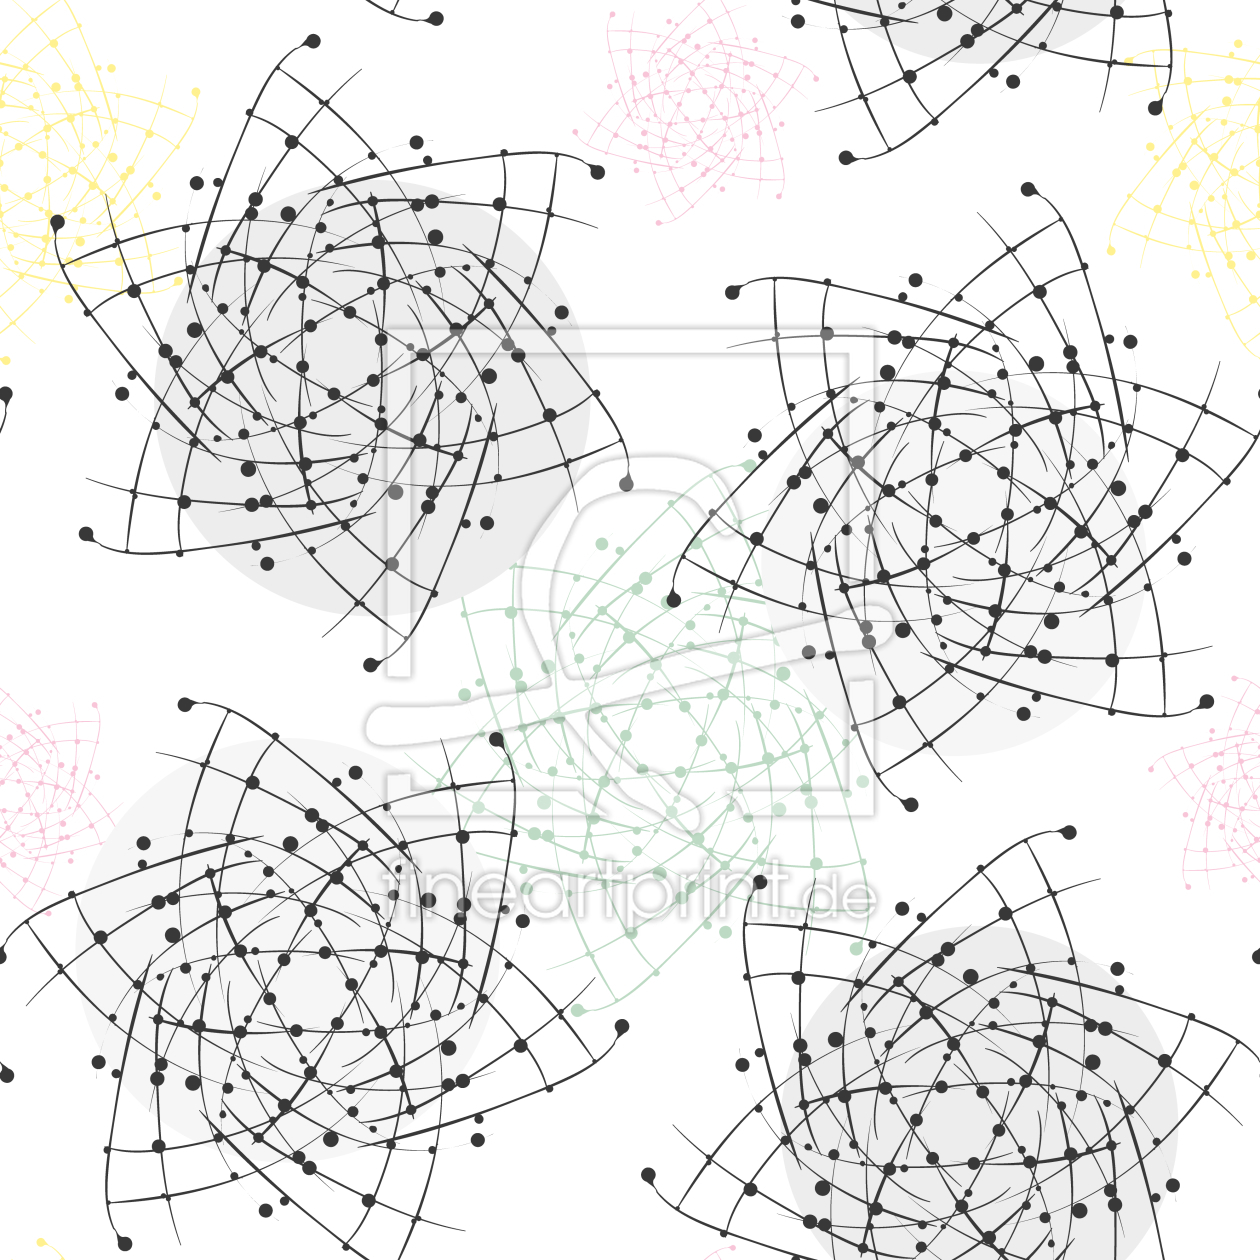 Bild-Nr.: 9007118 Atom Strudel erstellt von patterndesigns-com